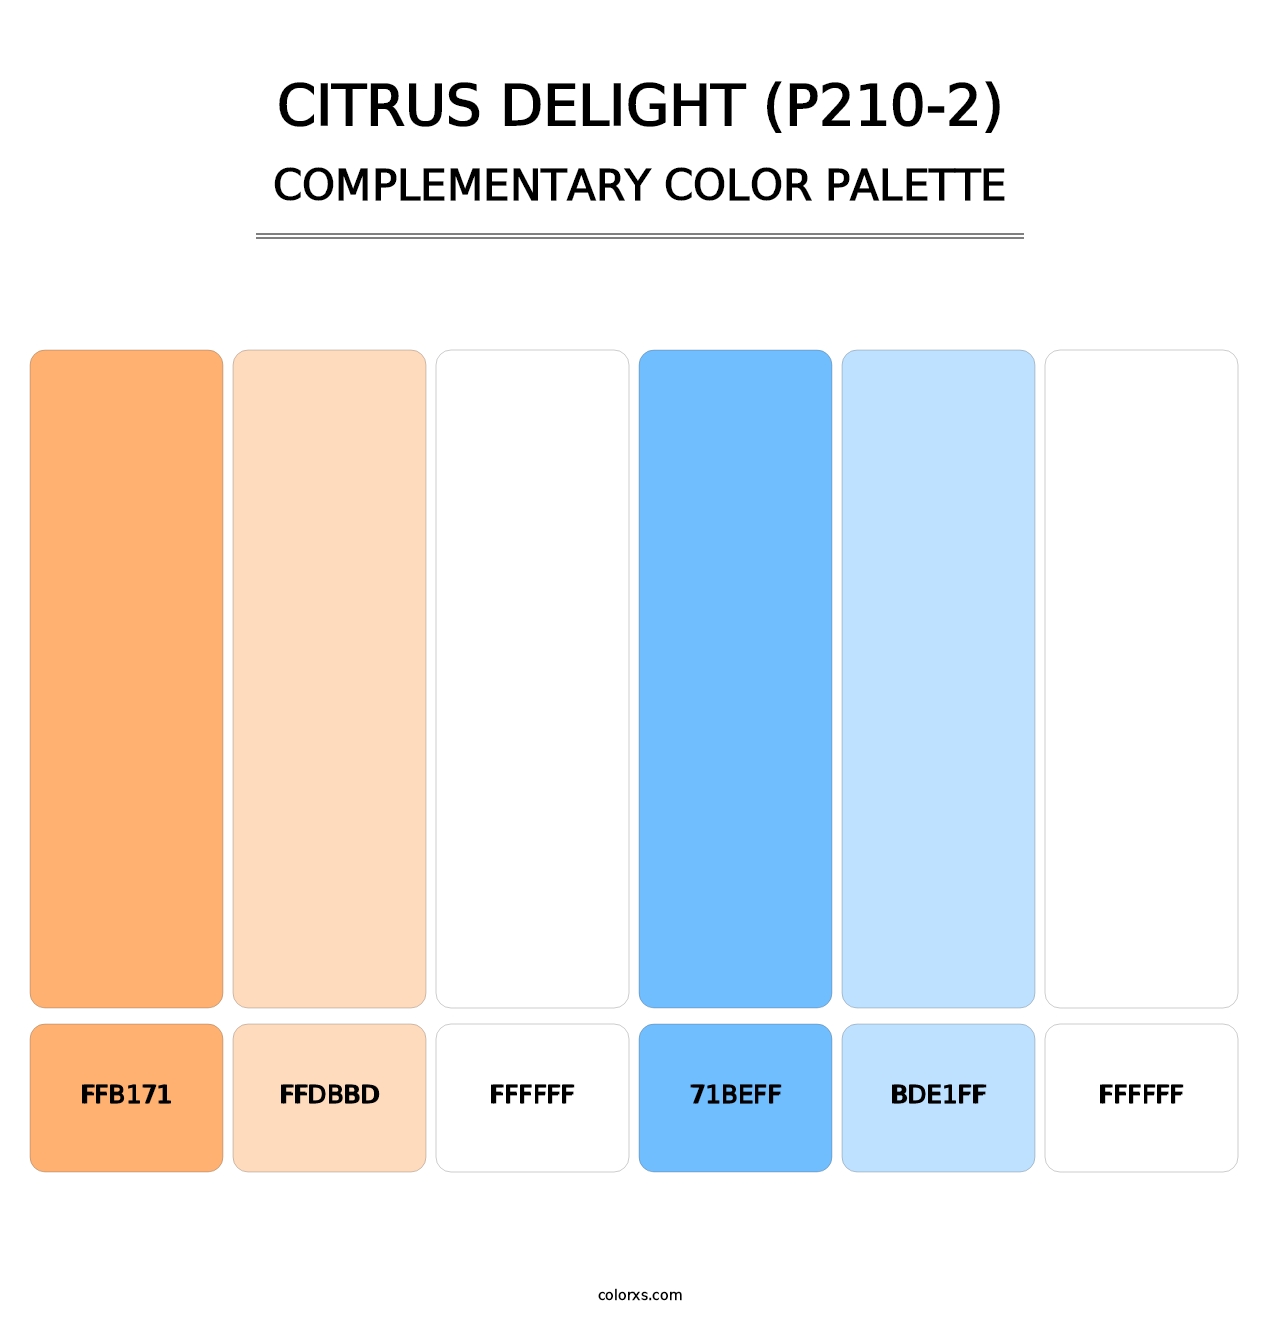 Citrus Delight (P210-2) - Complementary Color Palette